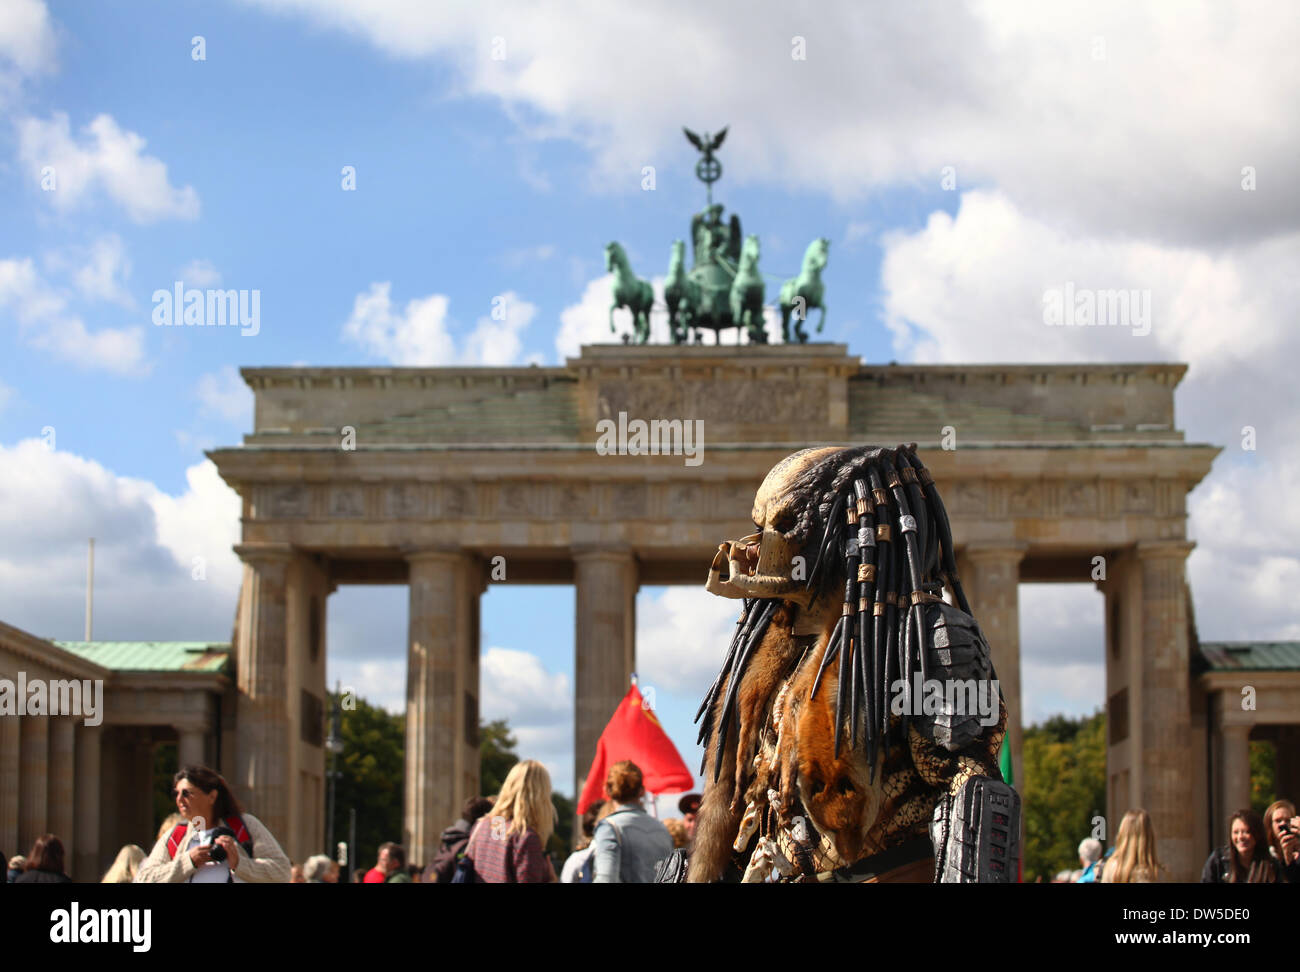 Un uomo vestito come un mostro attende per turisti alla Porta di Brandeburgo a Berlino, Settembre, 17, 2013. Sempre di più i turisti vengono a Berlino. La foto è parte di una serie sul turismo a Berlino. Foto. Wolfram Steinberg dpa Foto Stock